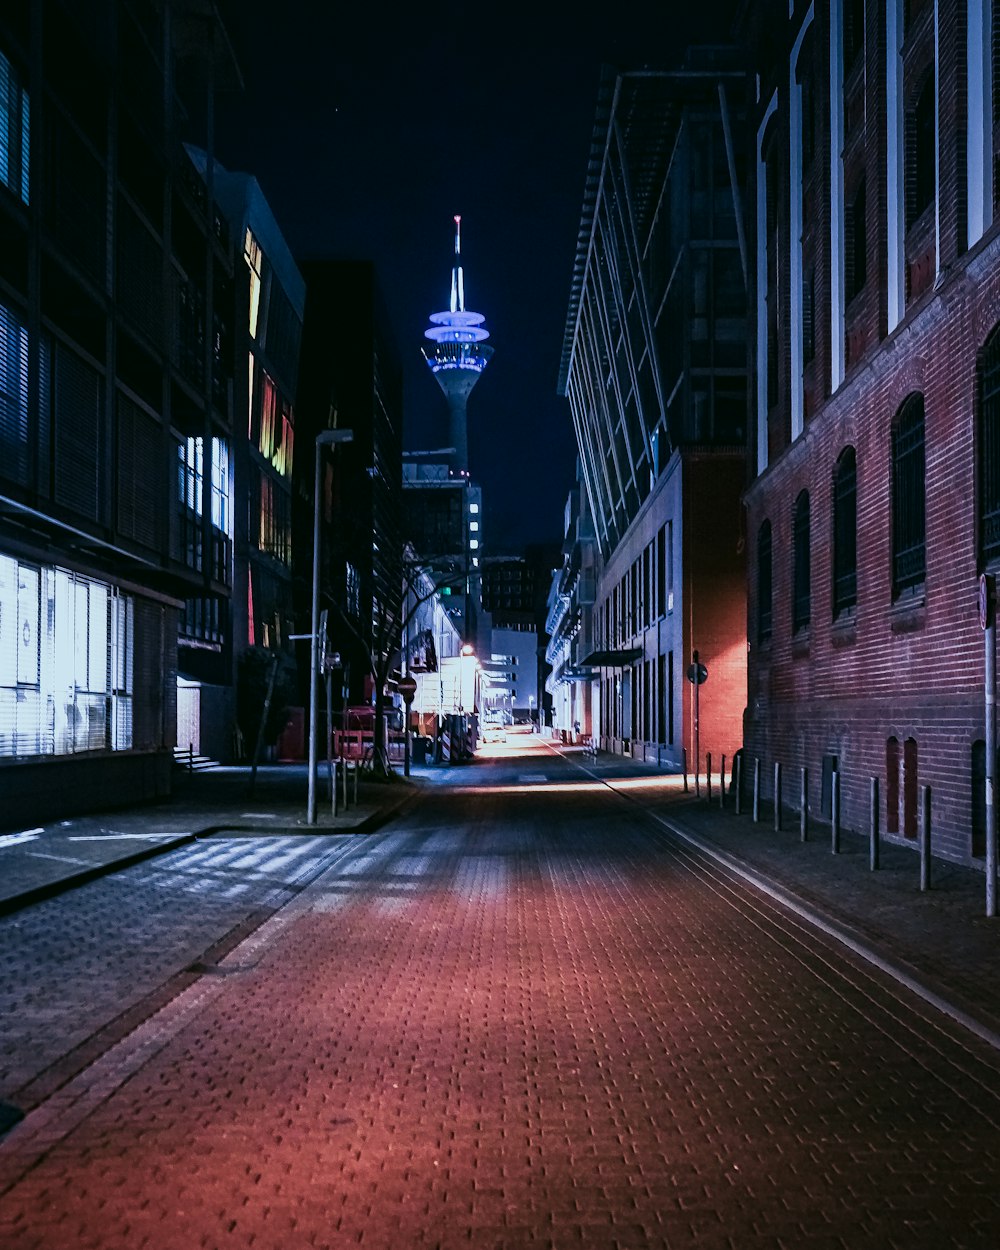 strada di mattoni rossi tra gli edifici durante la notte